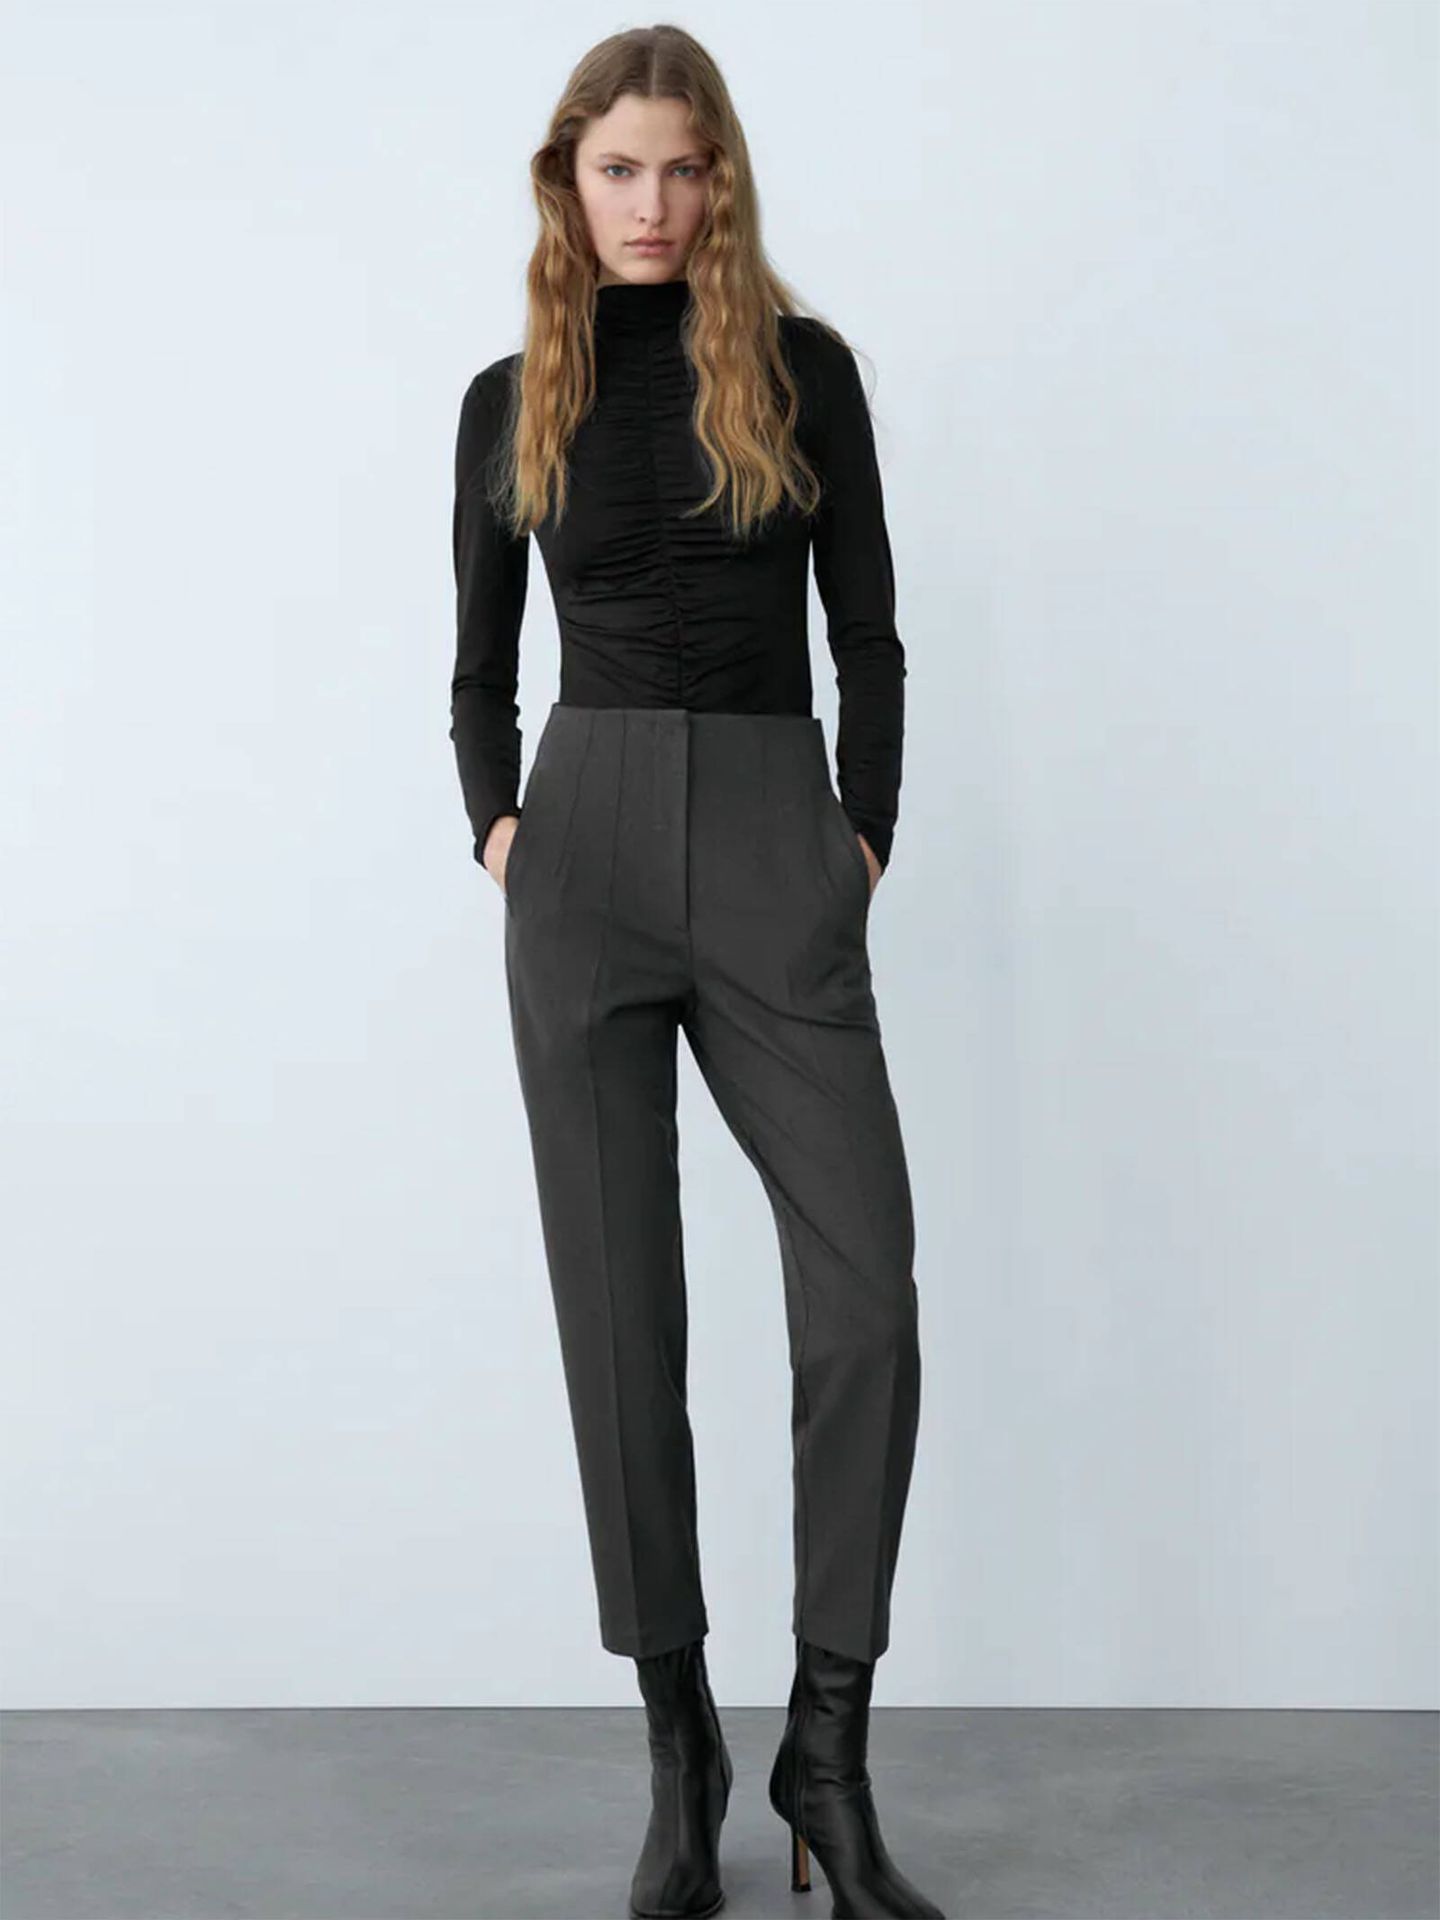 10 pantalones de vestir de Zara que quedan fenomenal con blazer y botines:  elegantes, cómodos y juveniles